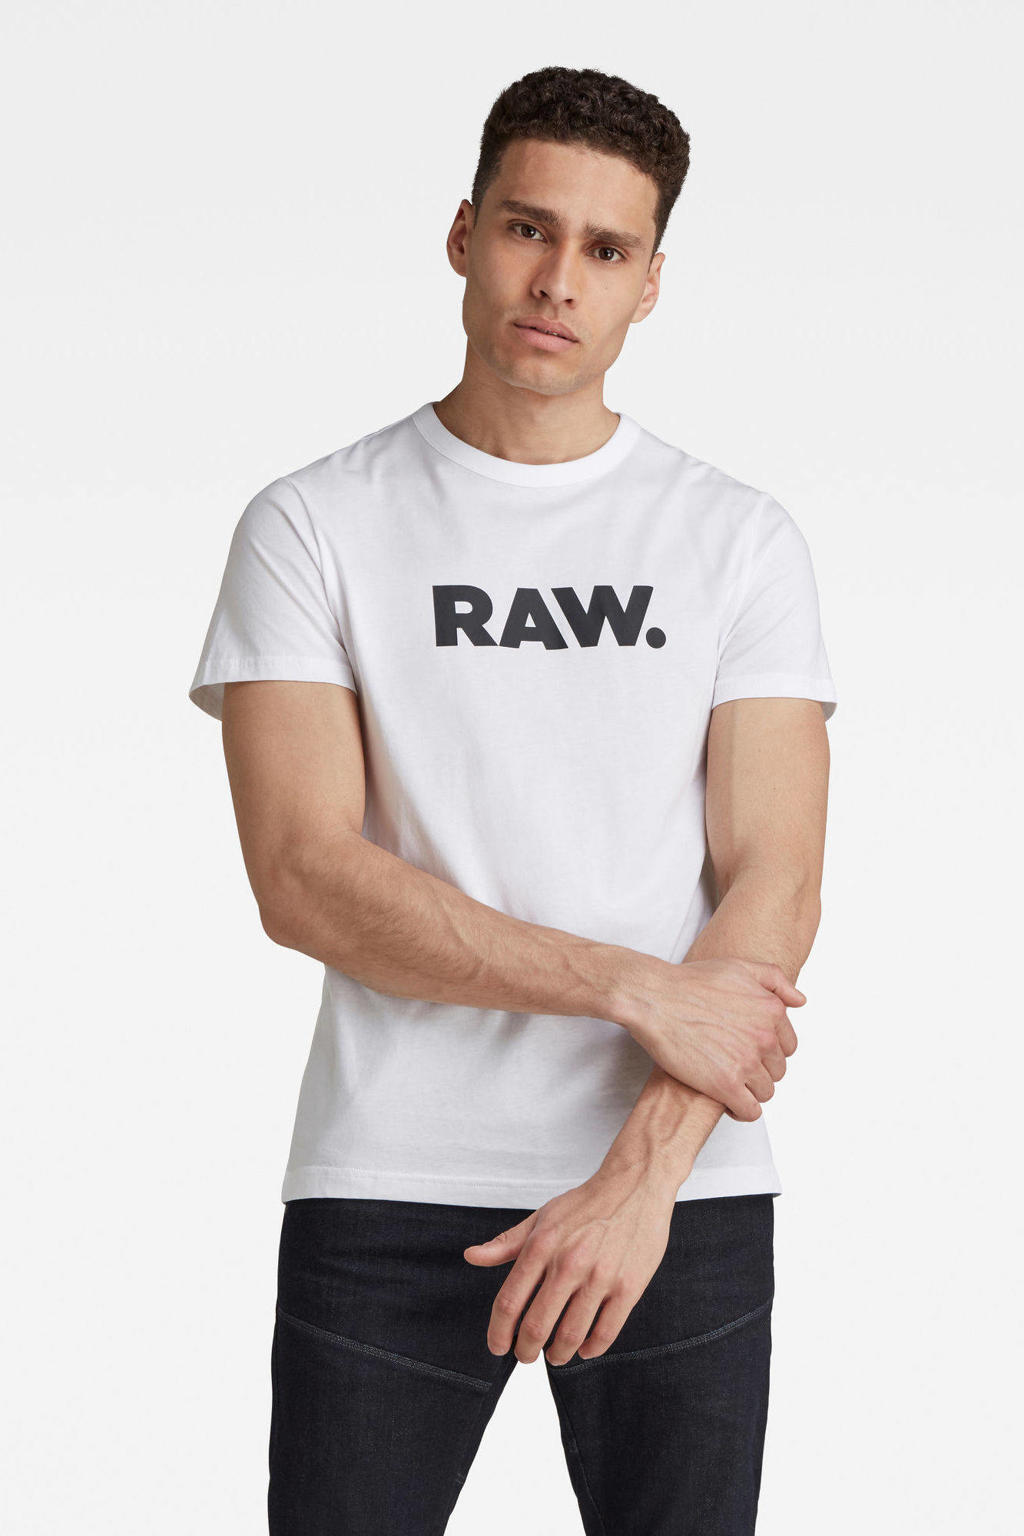 Wit en zwarte heren G-Star RAW Holorn T-shirt van biologisch katoen met tekst print, korte mouwen en ronde hals